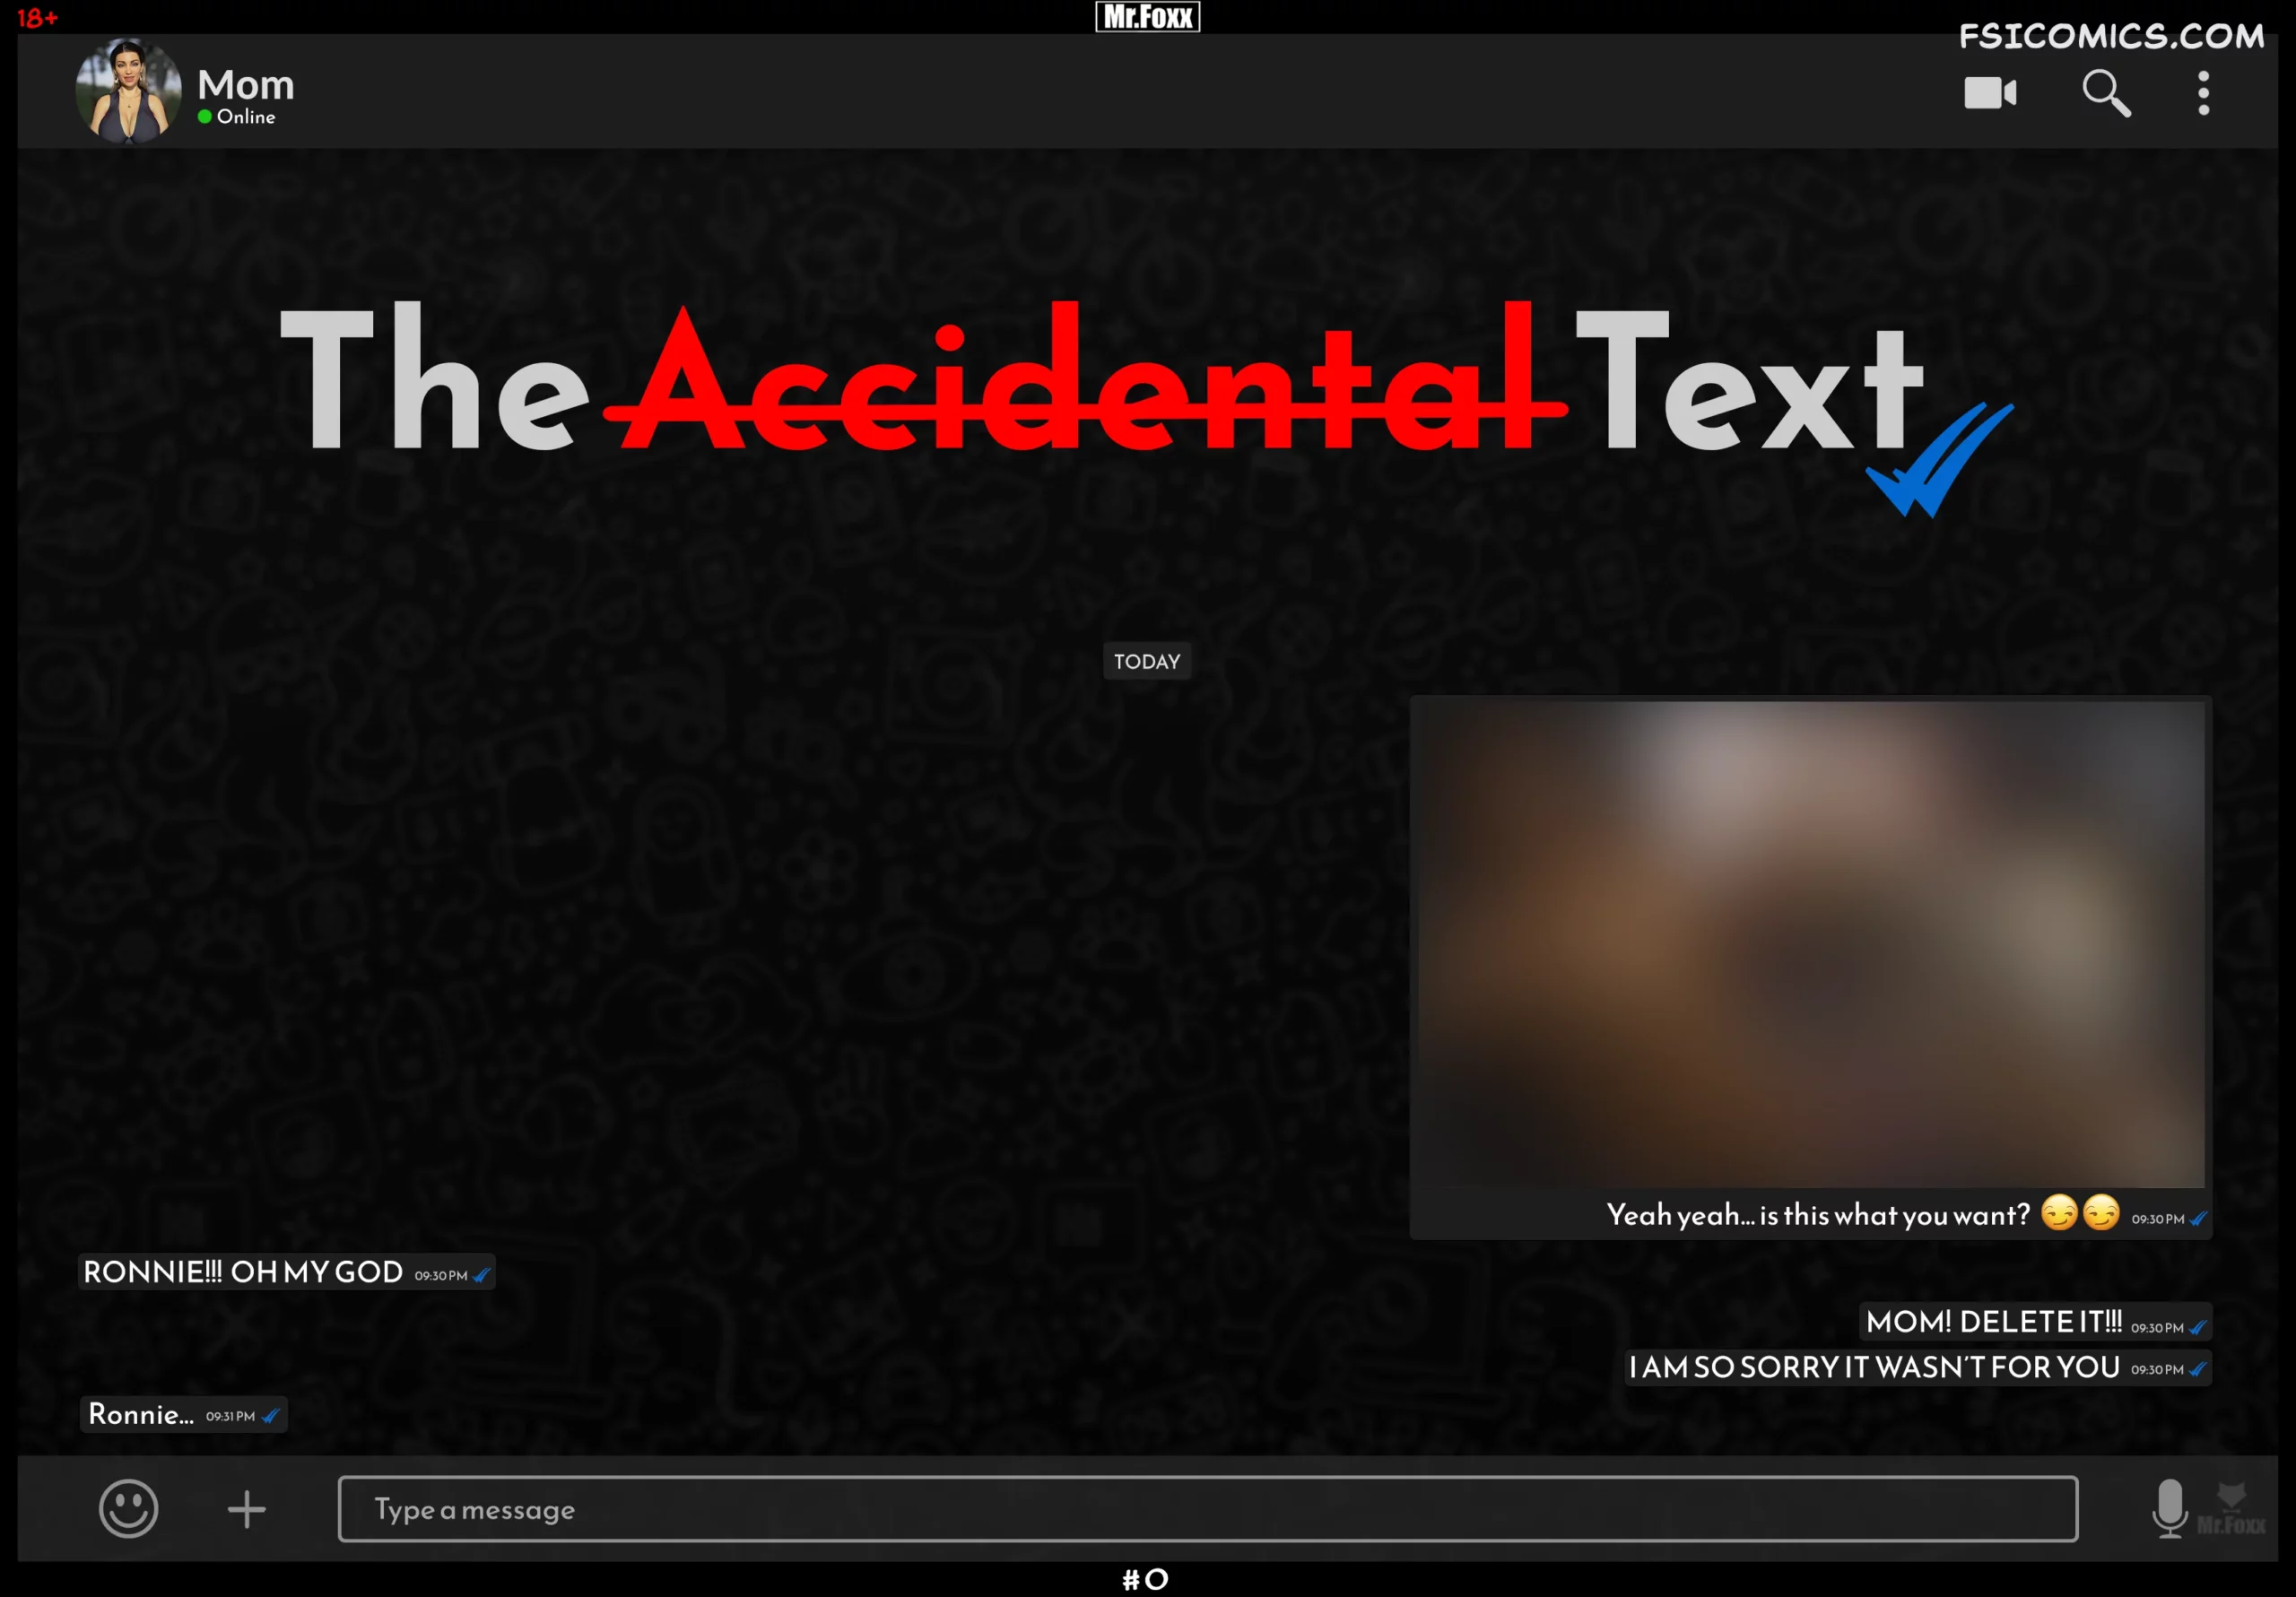 The Accidental Text - Mr.FOXX - 101 - FSIComics